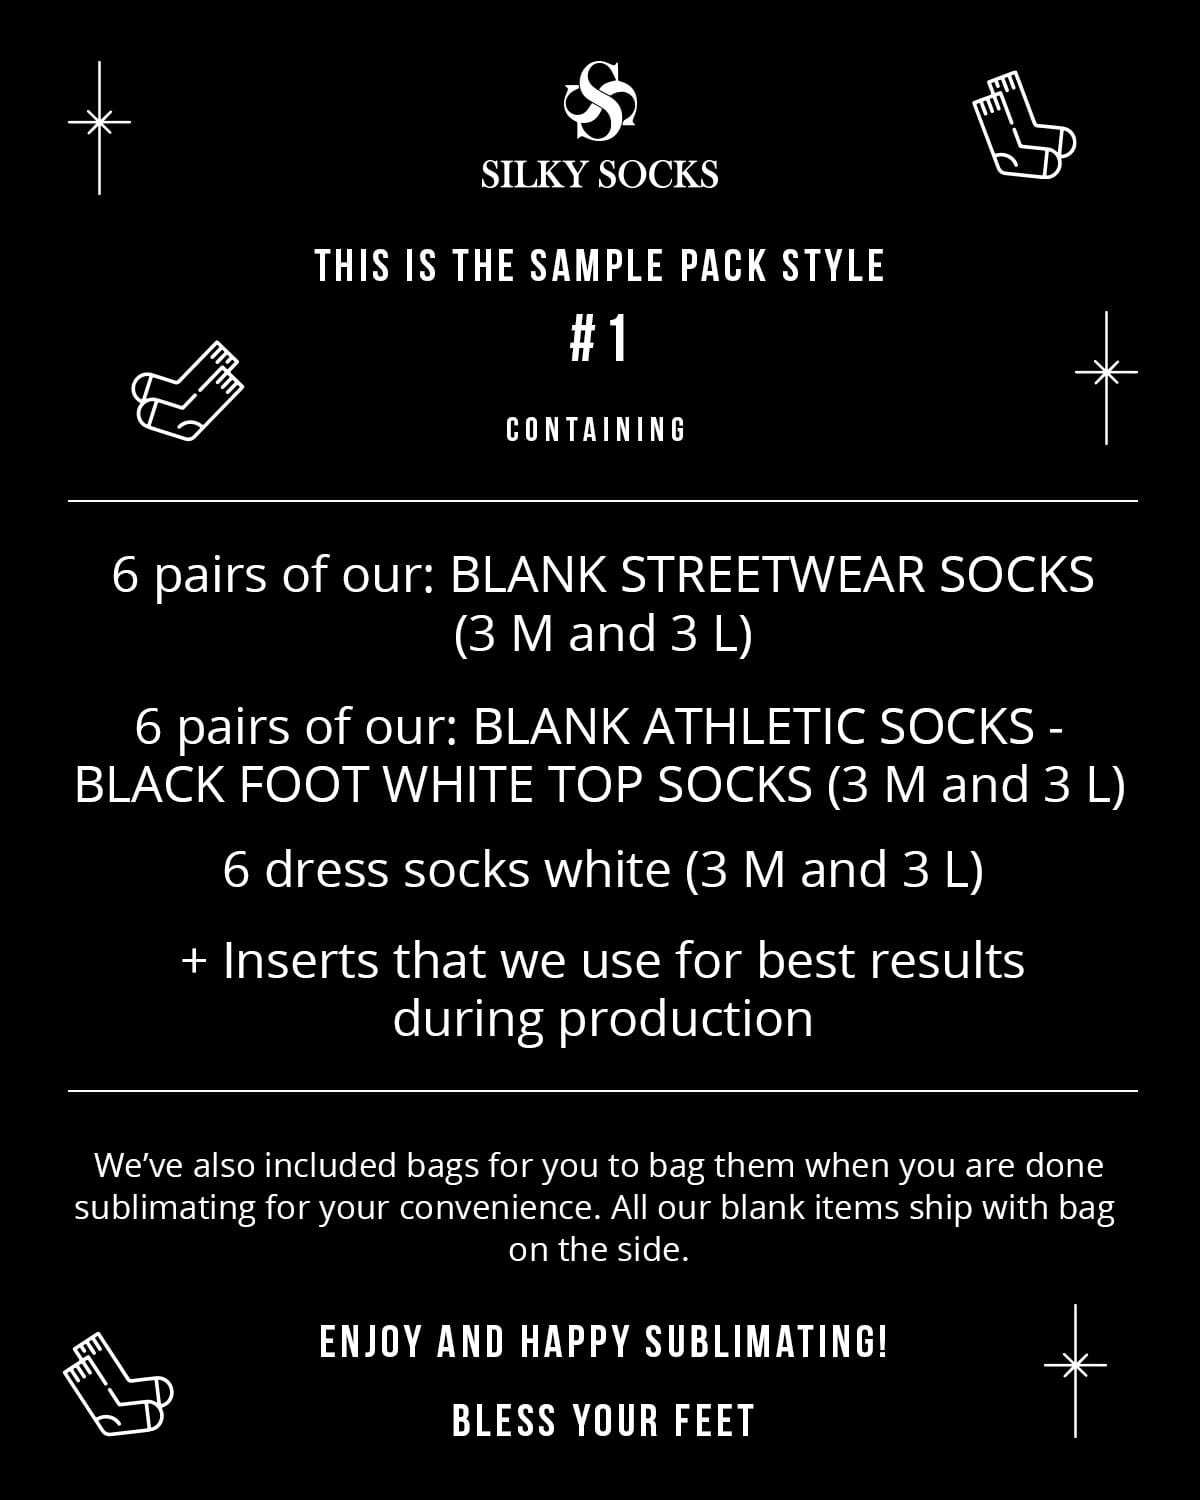 Sample Packs of Socks